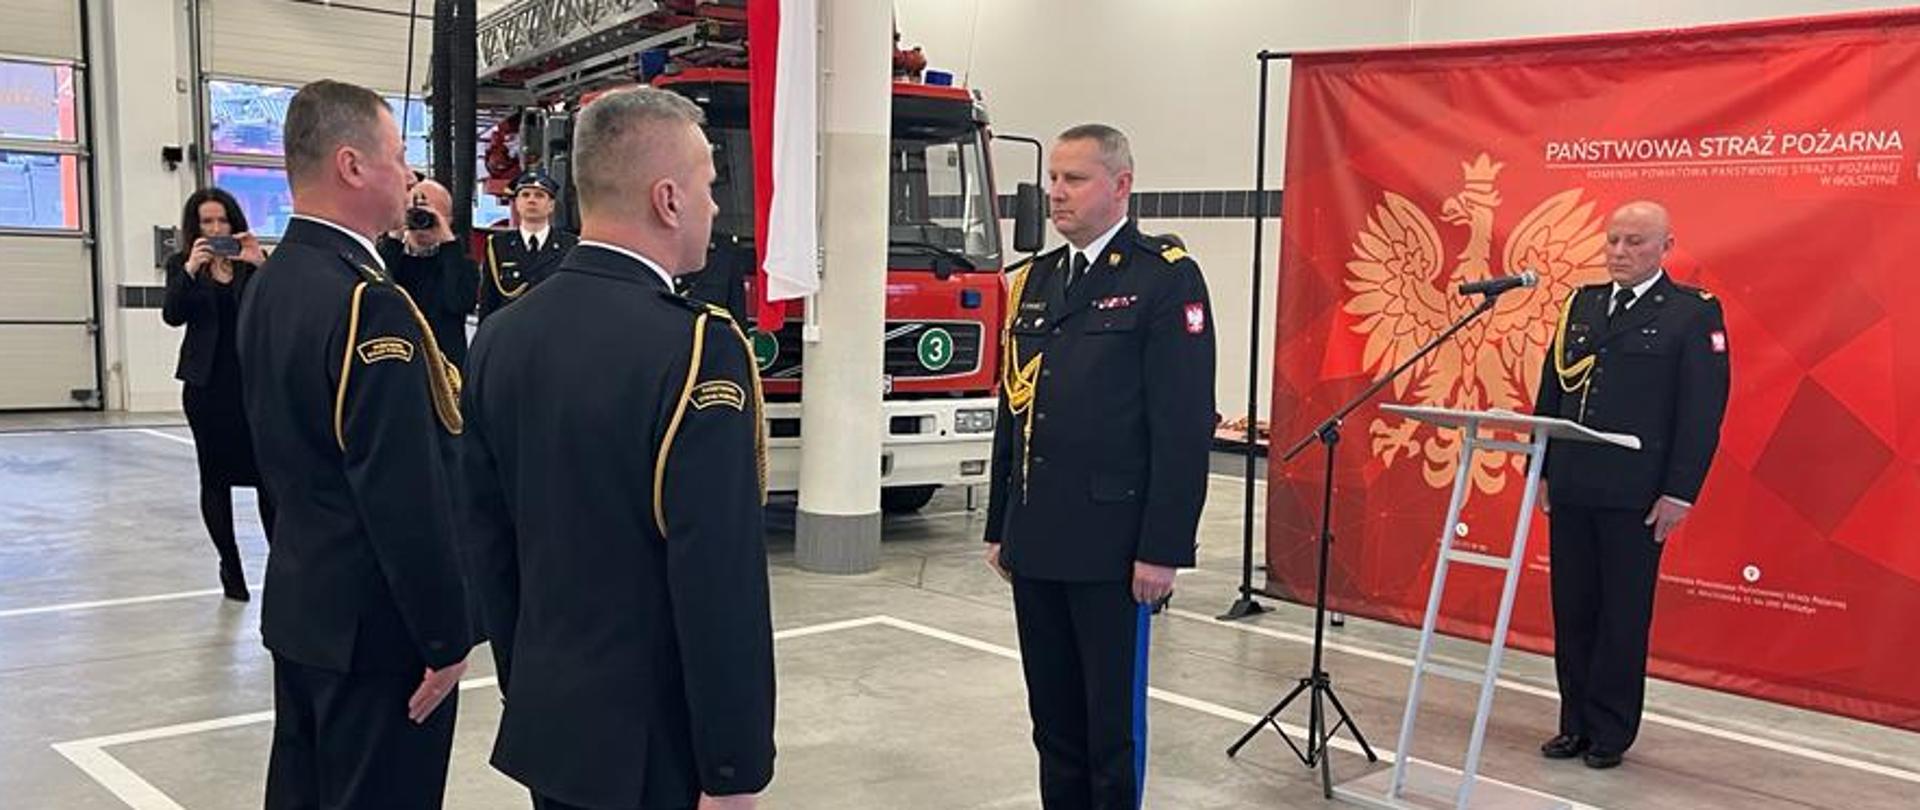 w garażu dwóch strażaków stoi na baczność przed jednym strażakiem, generałem, w tle mównica i czerwony baner z orłem oraz samochód strażacki